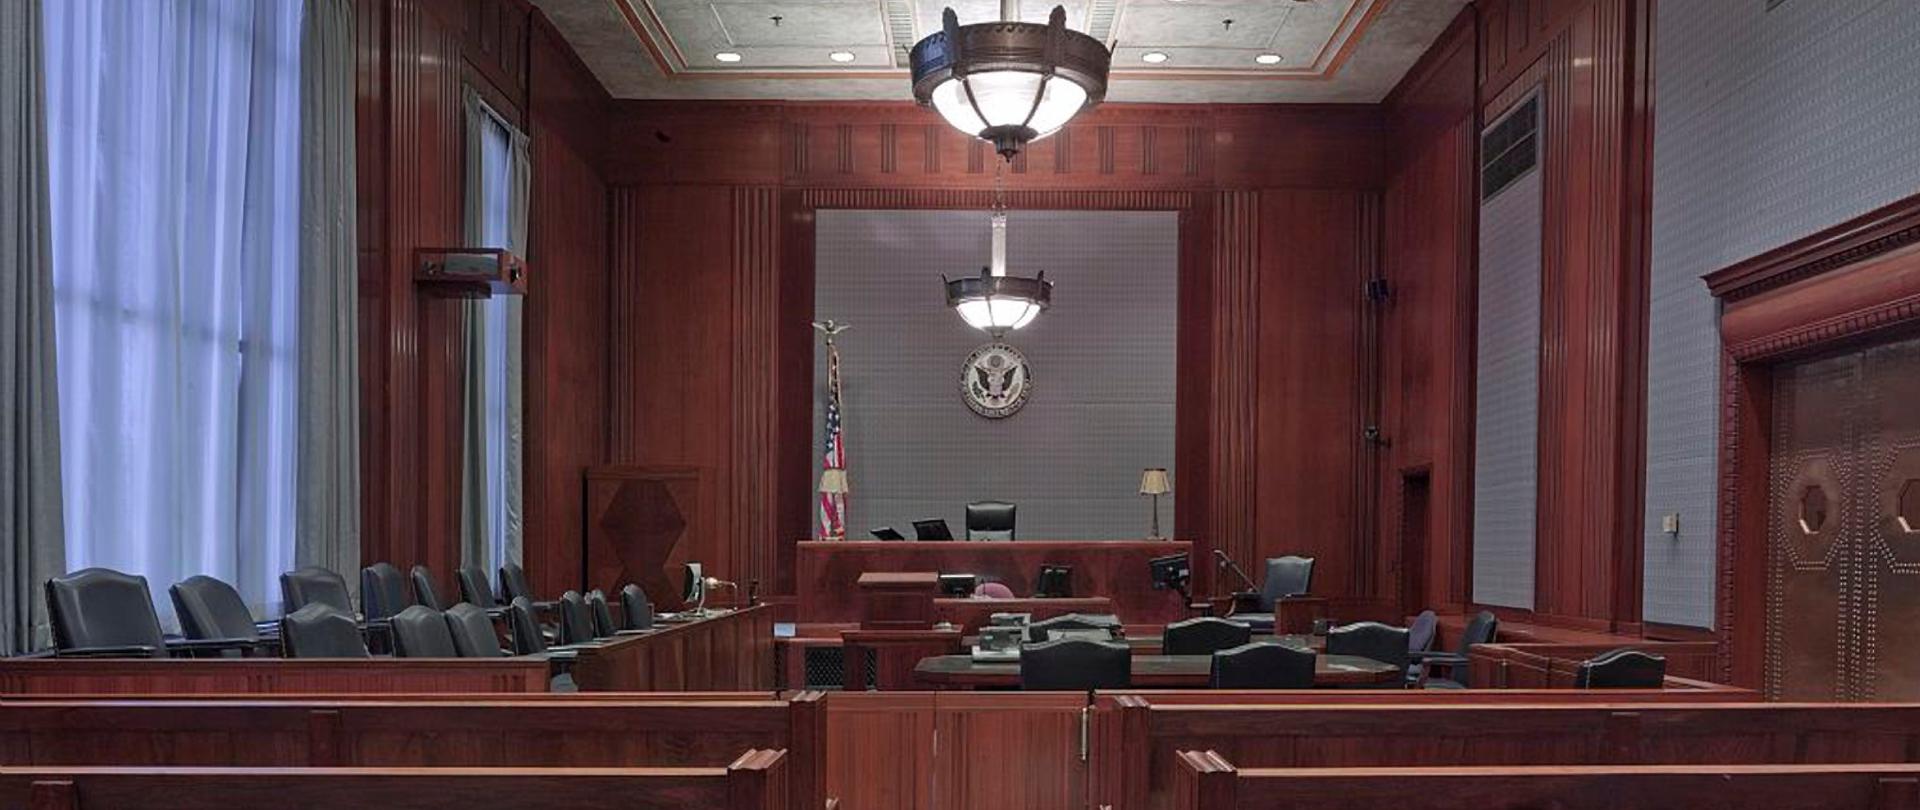 Zdjęcie przedstawia wnętrze sali sądowej wewnątrz budynku. Na środku sufitu zwisa lampa, na pierwszym planie widać ławy a dalej w dalszej perspektywie krzesła.